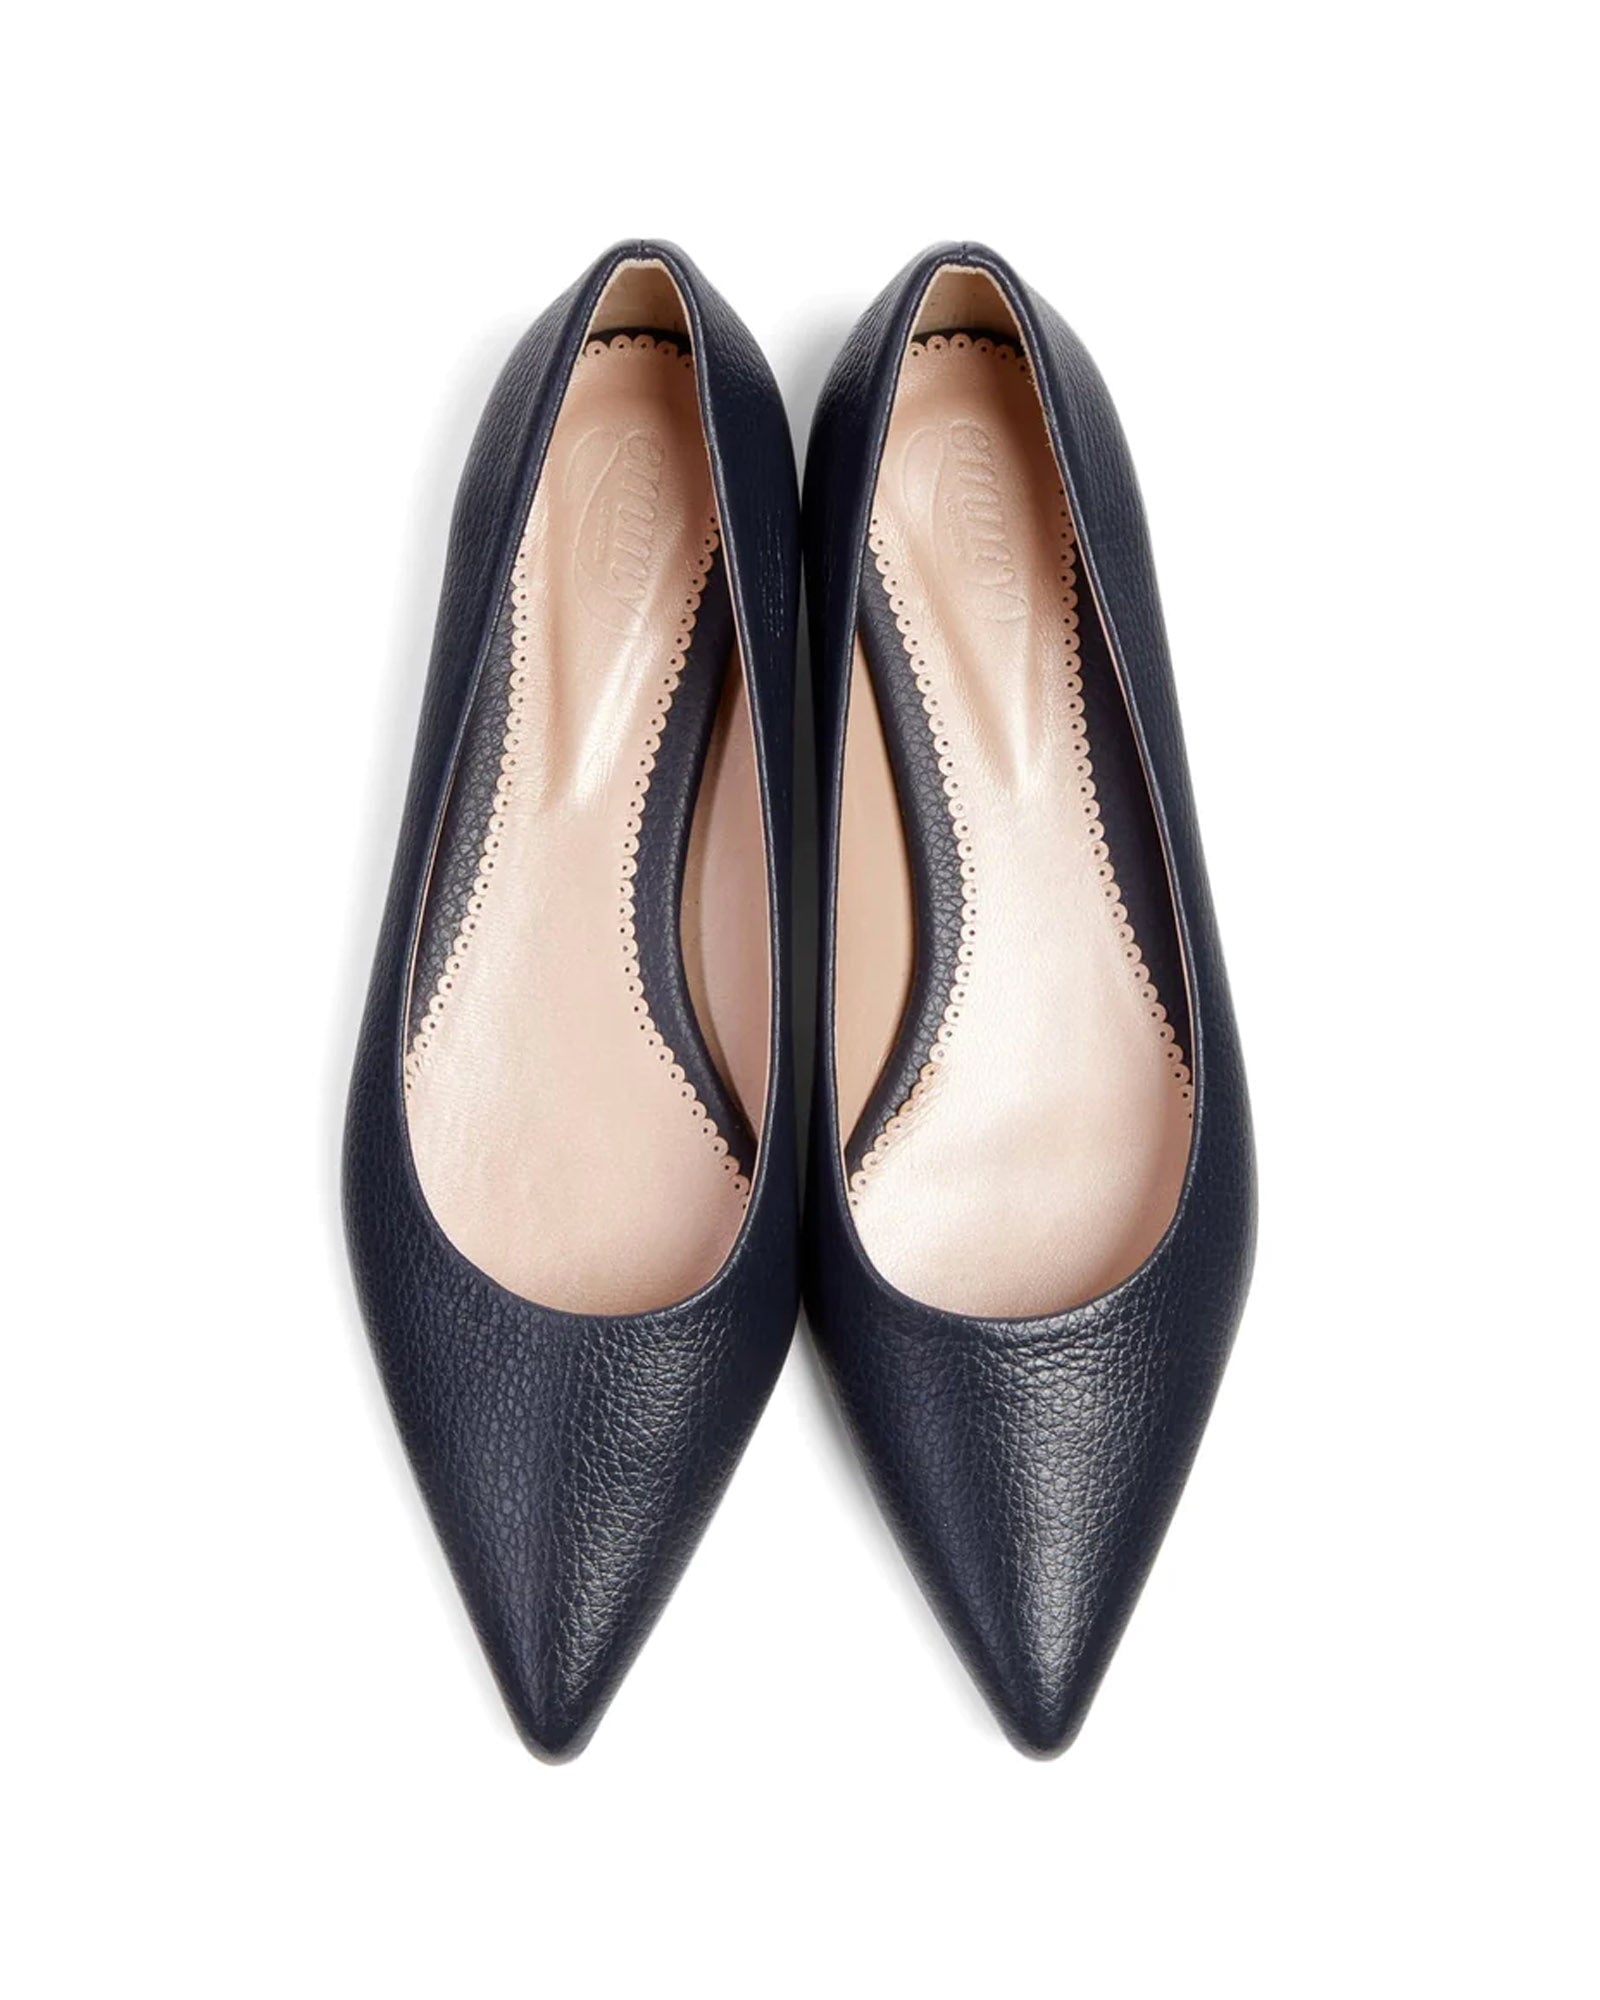 Lulu Textured Dark Navy Leather Fashion Shoe Flat Court Shoe  image